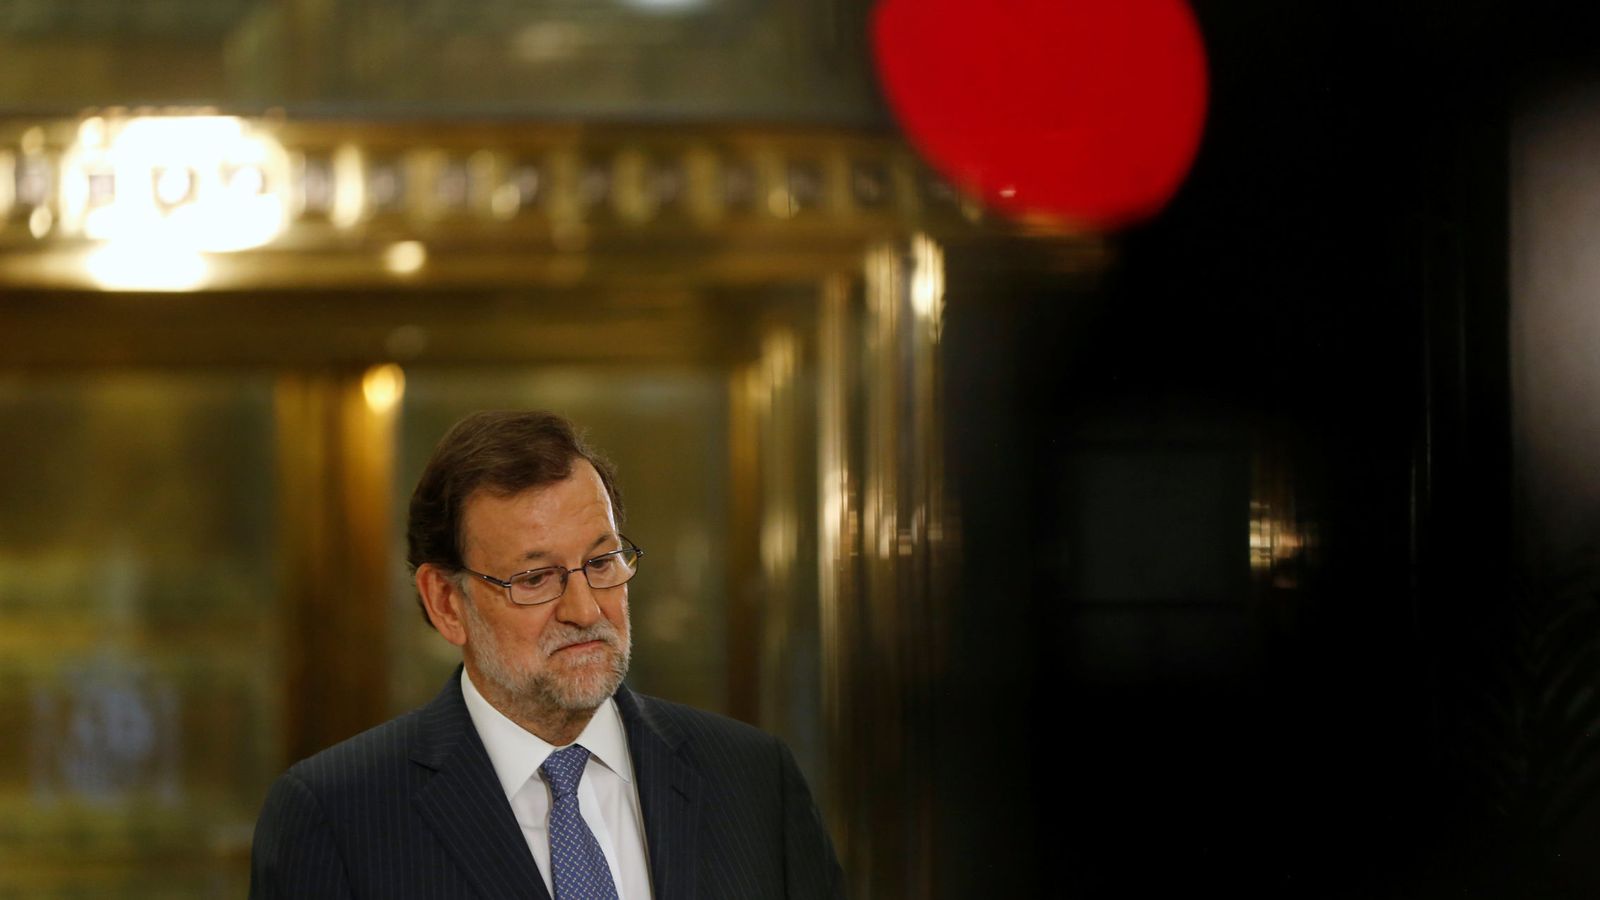 Foto: El presidente del Gobierno en funciones, Mariano Rajoy, durante una rueda de prensa en el Congreso. (EFE)